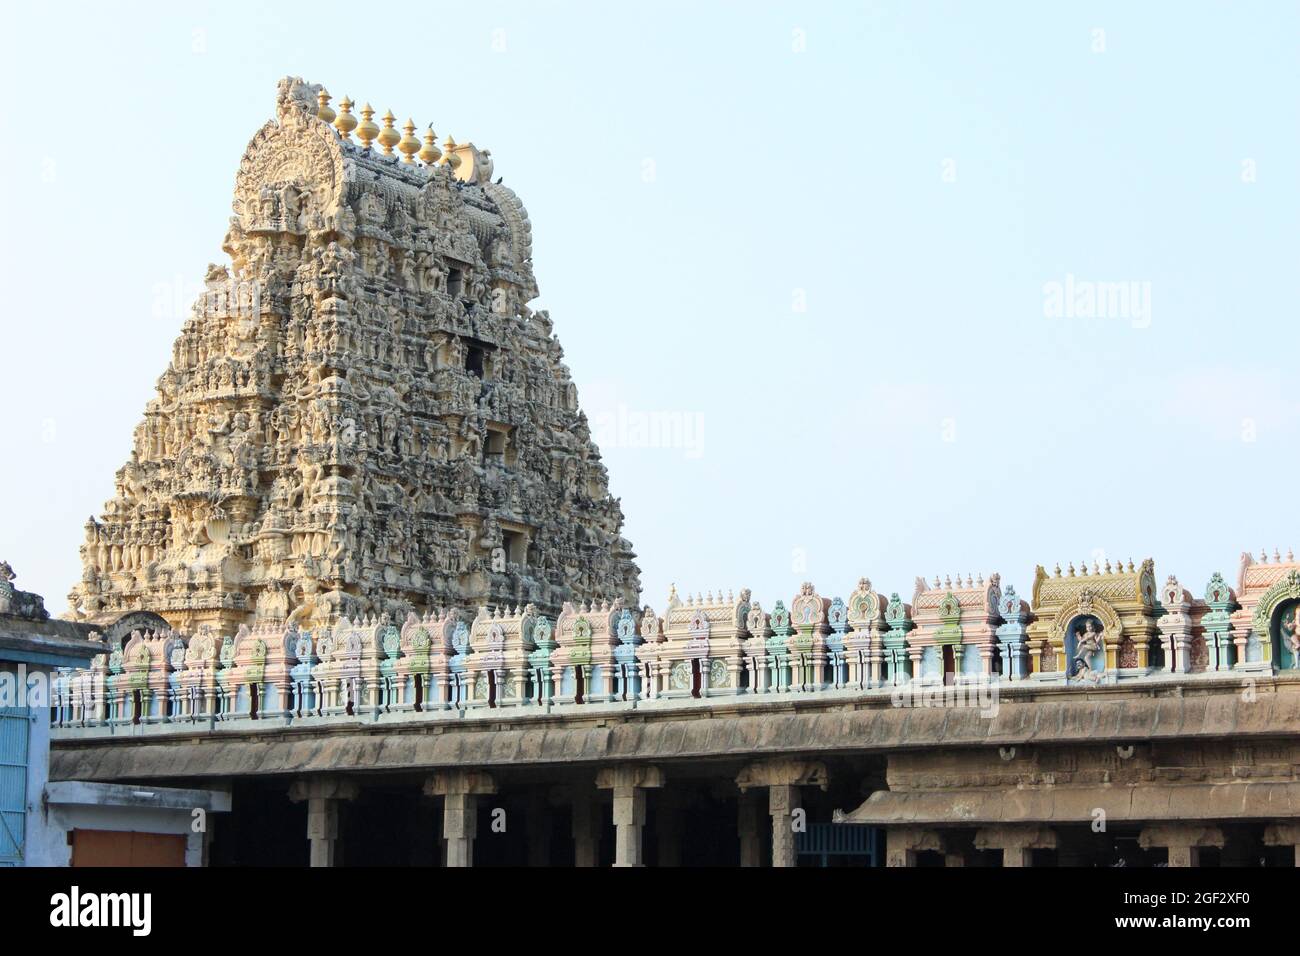 Shri Ekambaranathar Tempel, Kanchipuram, Tamil Nadu, Indien. Gewidmet Lord Shiva und verbunden mit der Erde oder Prithivi eines der fünf Elemente Stockfoto